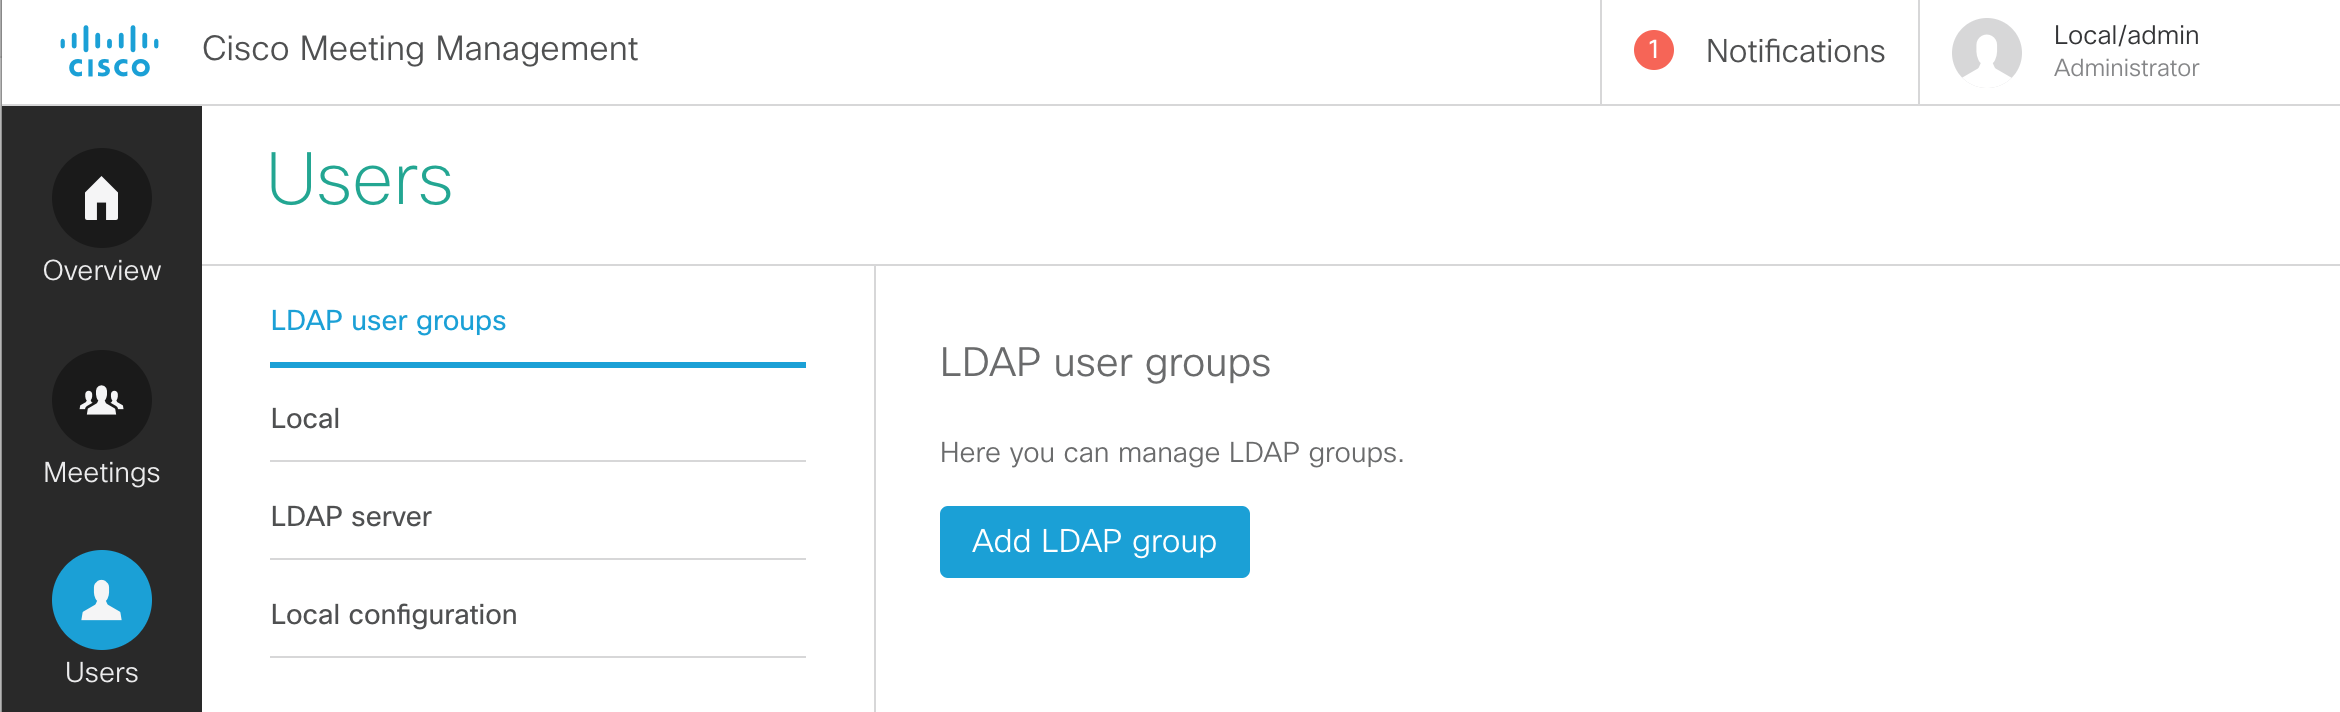 cmm-add-ldap-user-group.png